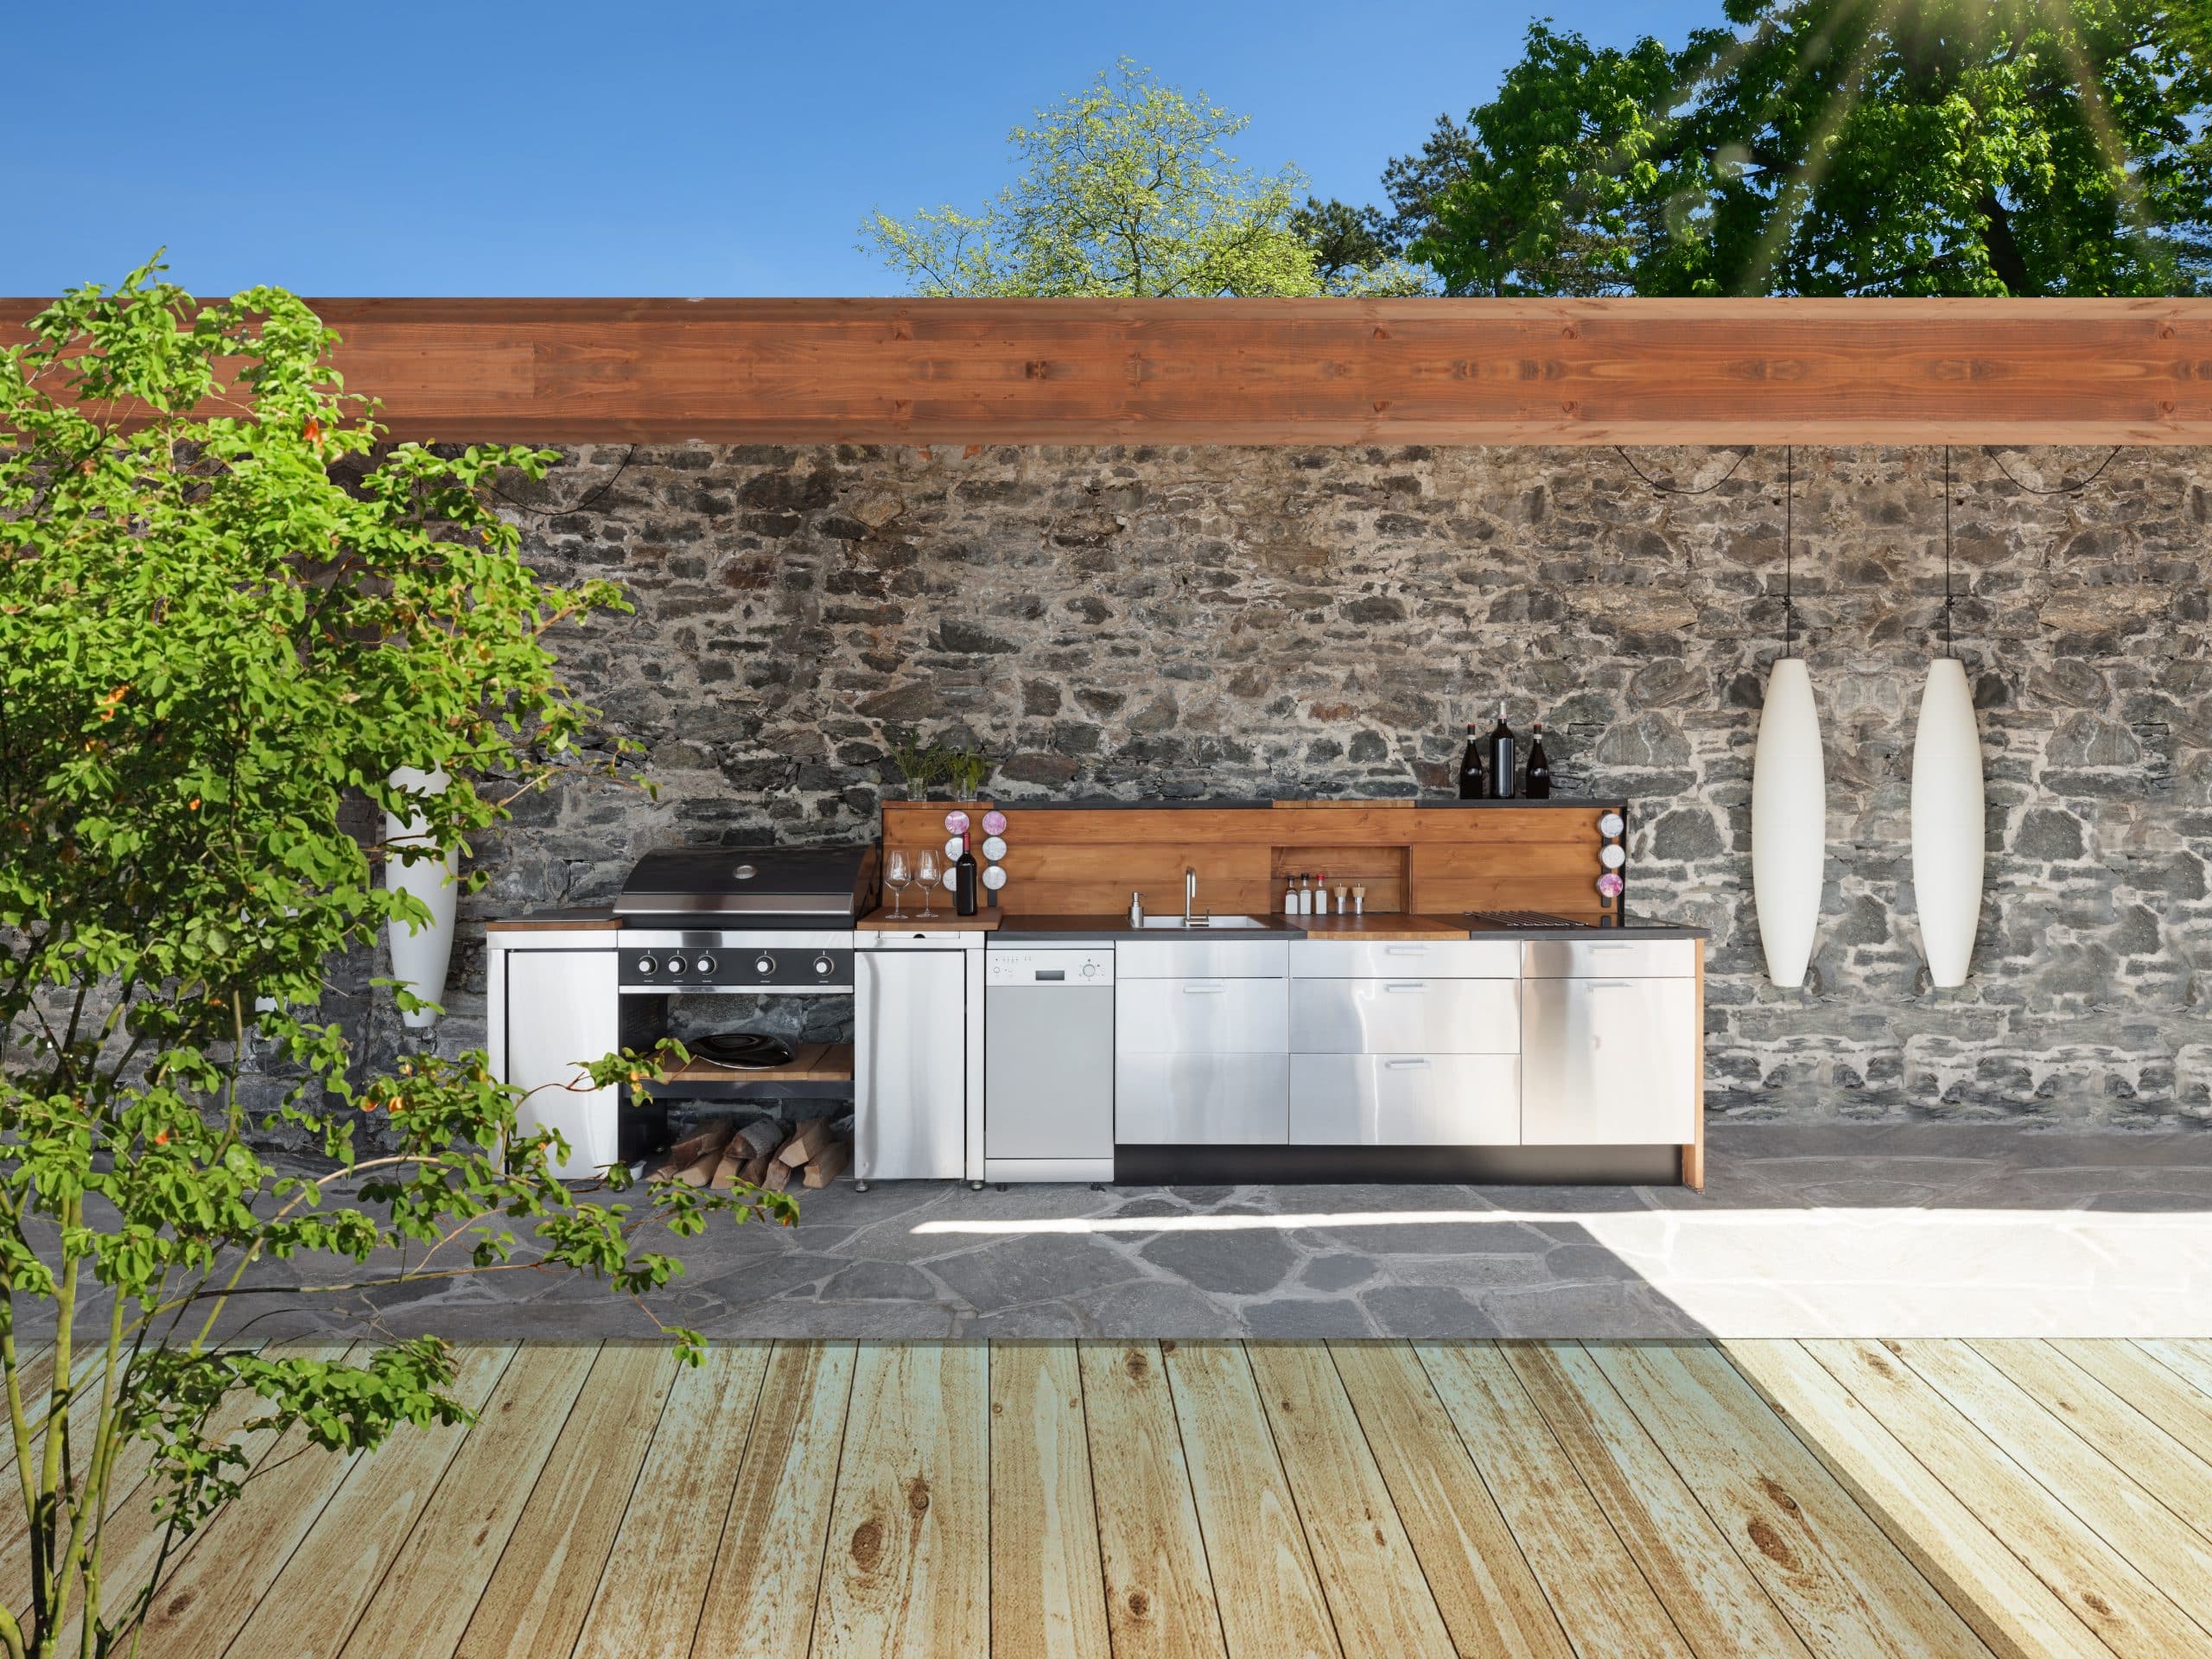 Moderne Outdoorküche mit Elementen aus Holz und Nirosta-Edelstahl überdacht und witterungsgeschützt an einer Natursteinwand.